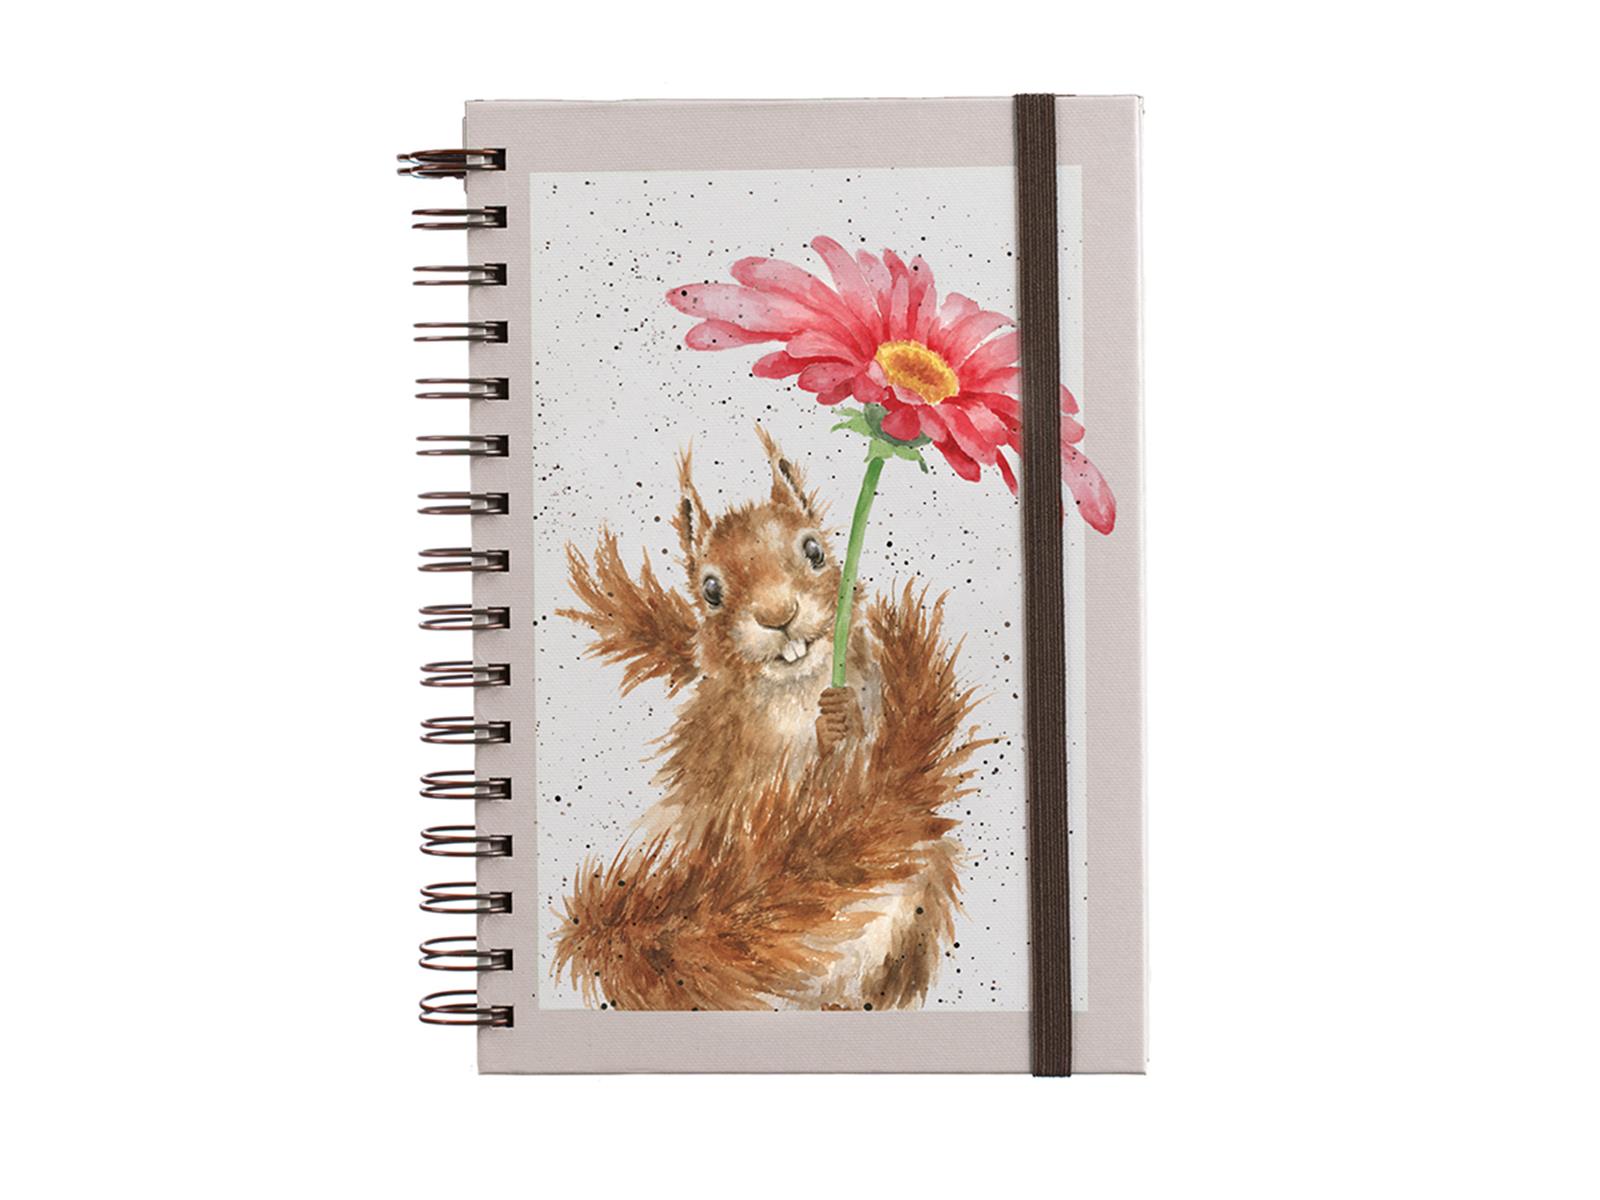 Wrendale Stationery Spiral Notizbuch, DIN A 5, Motiv Eichhörnchen mit Blume 